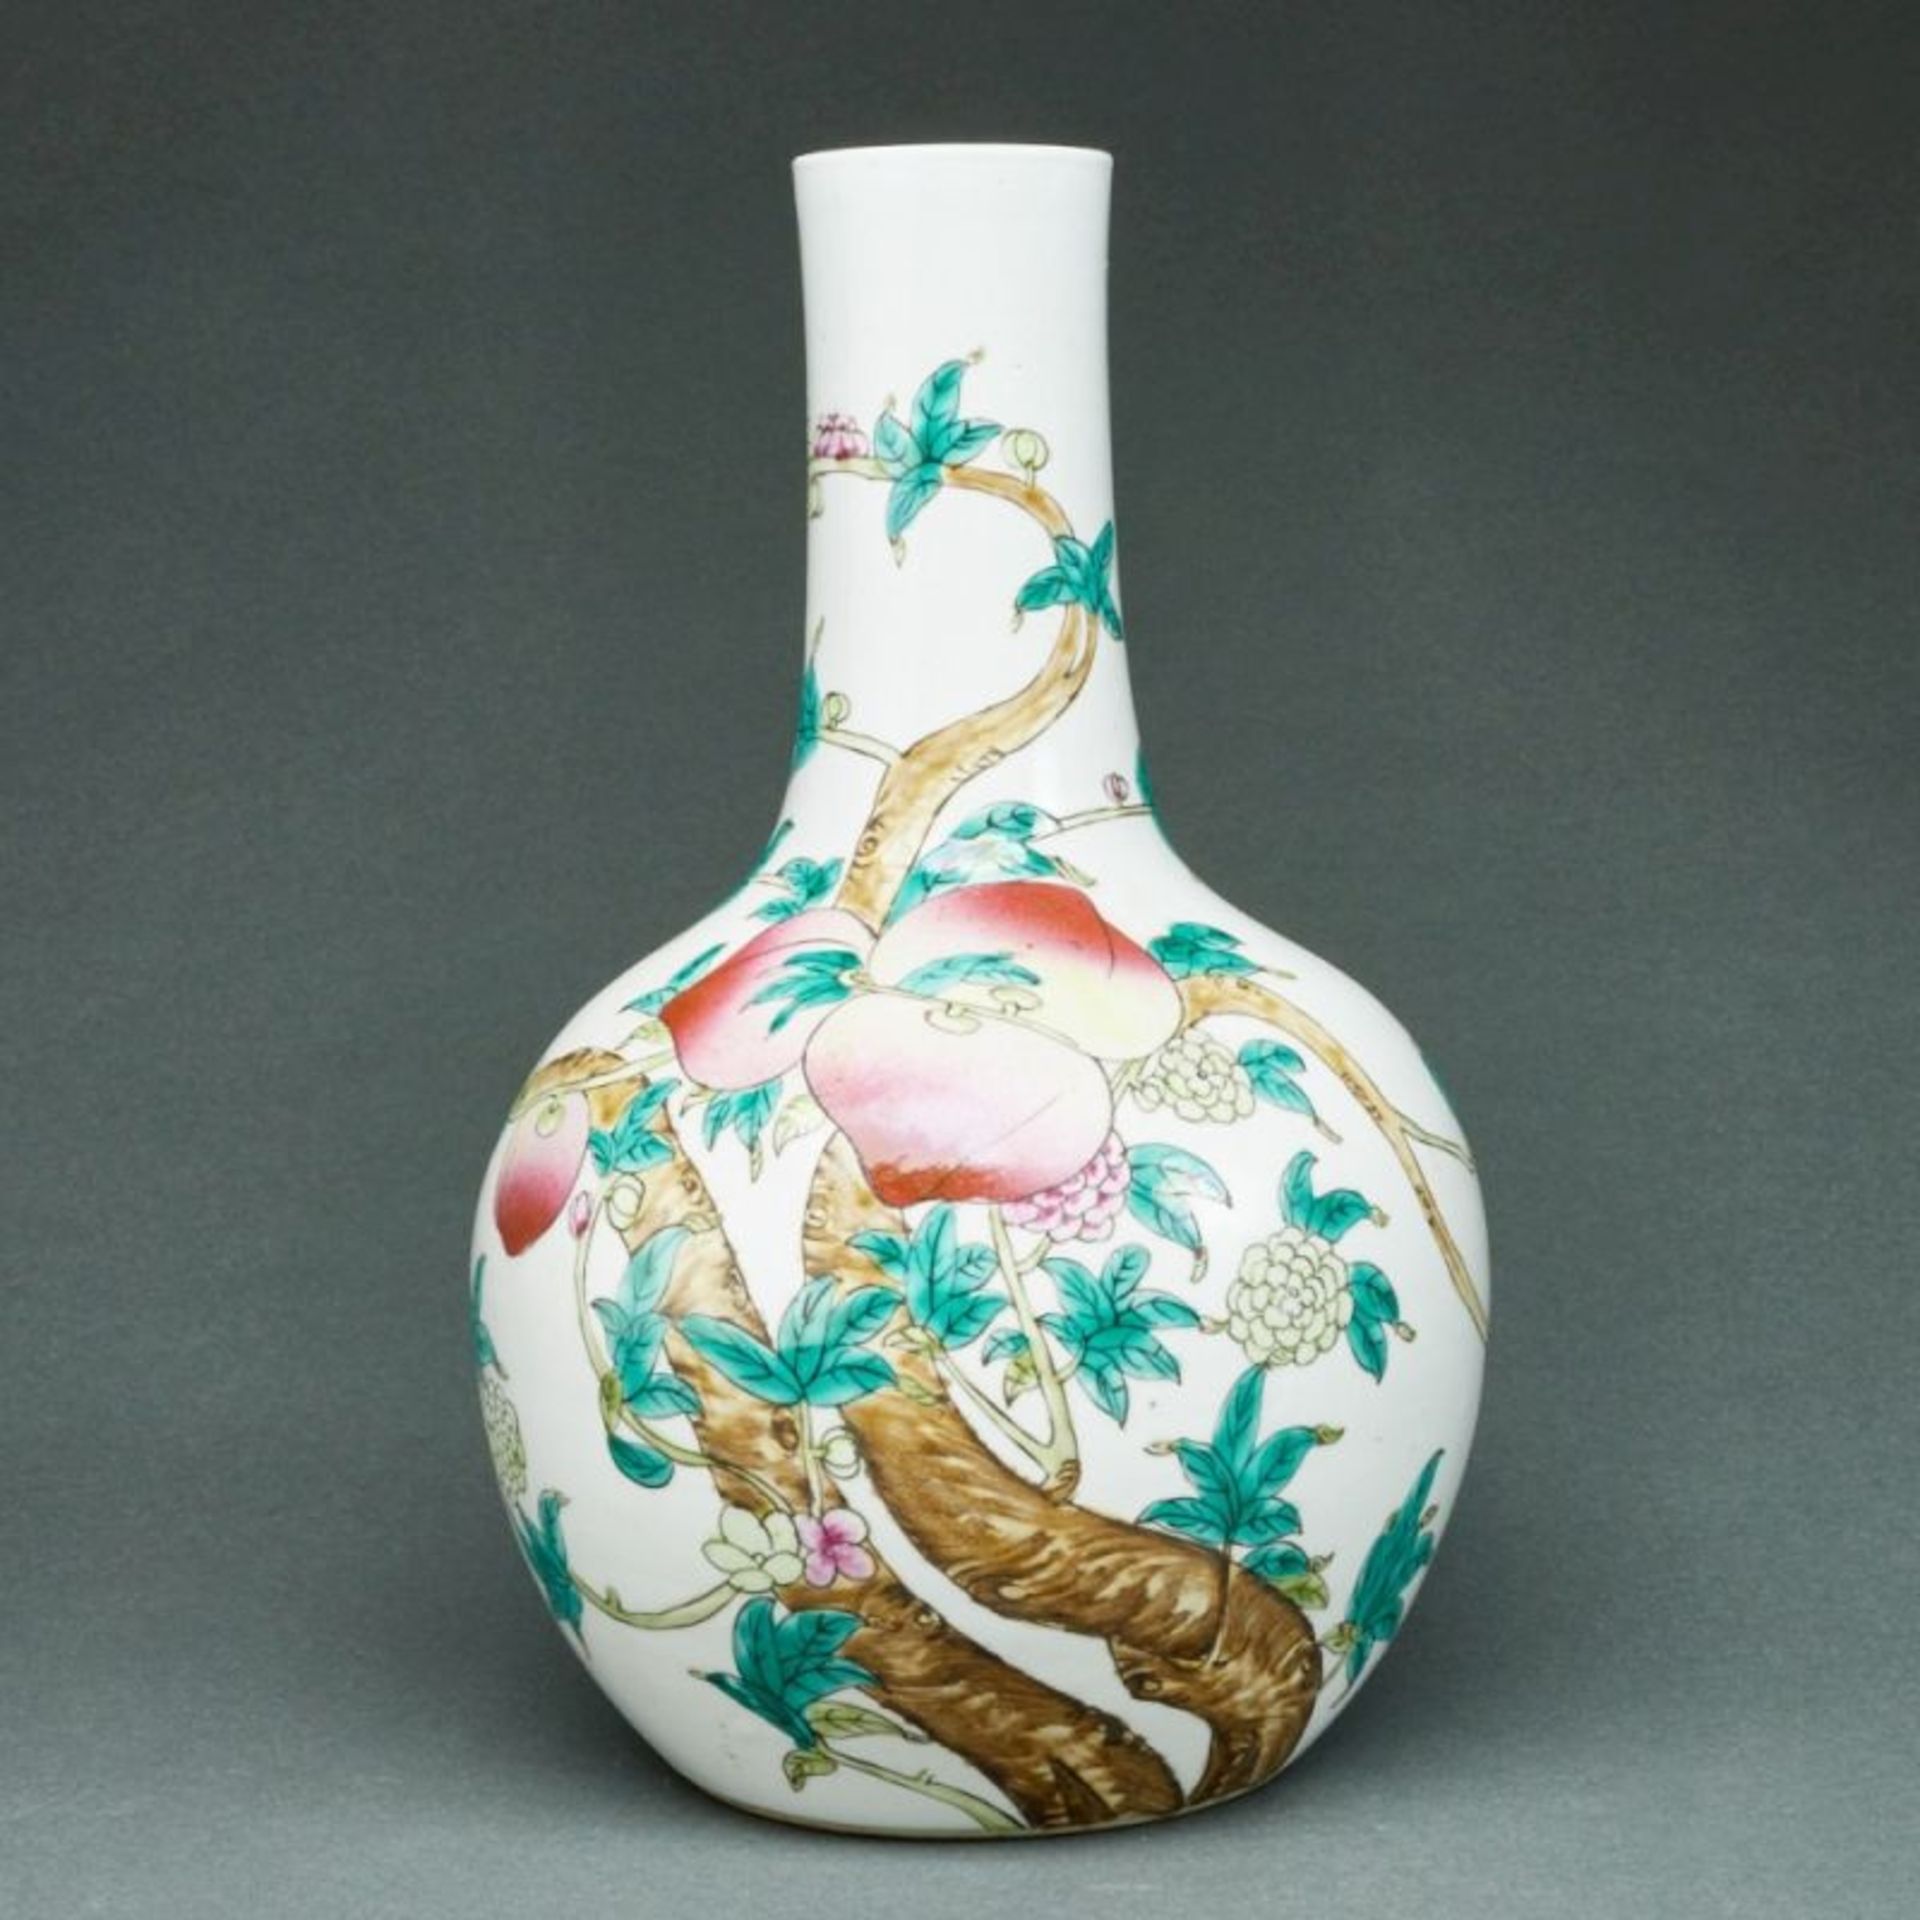 Flaschenvase mit Neunpfirsich-Dekor, China, Qing-Dynastie, Ende 19. Jahrhundert